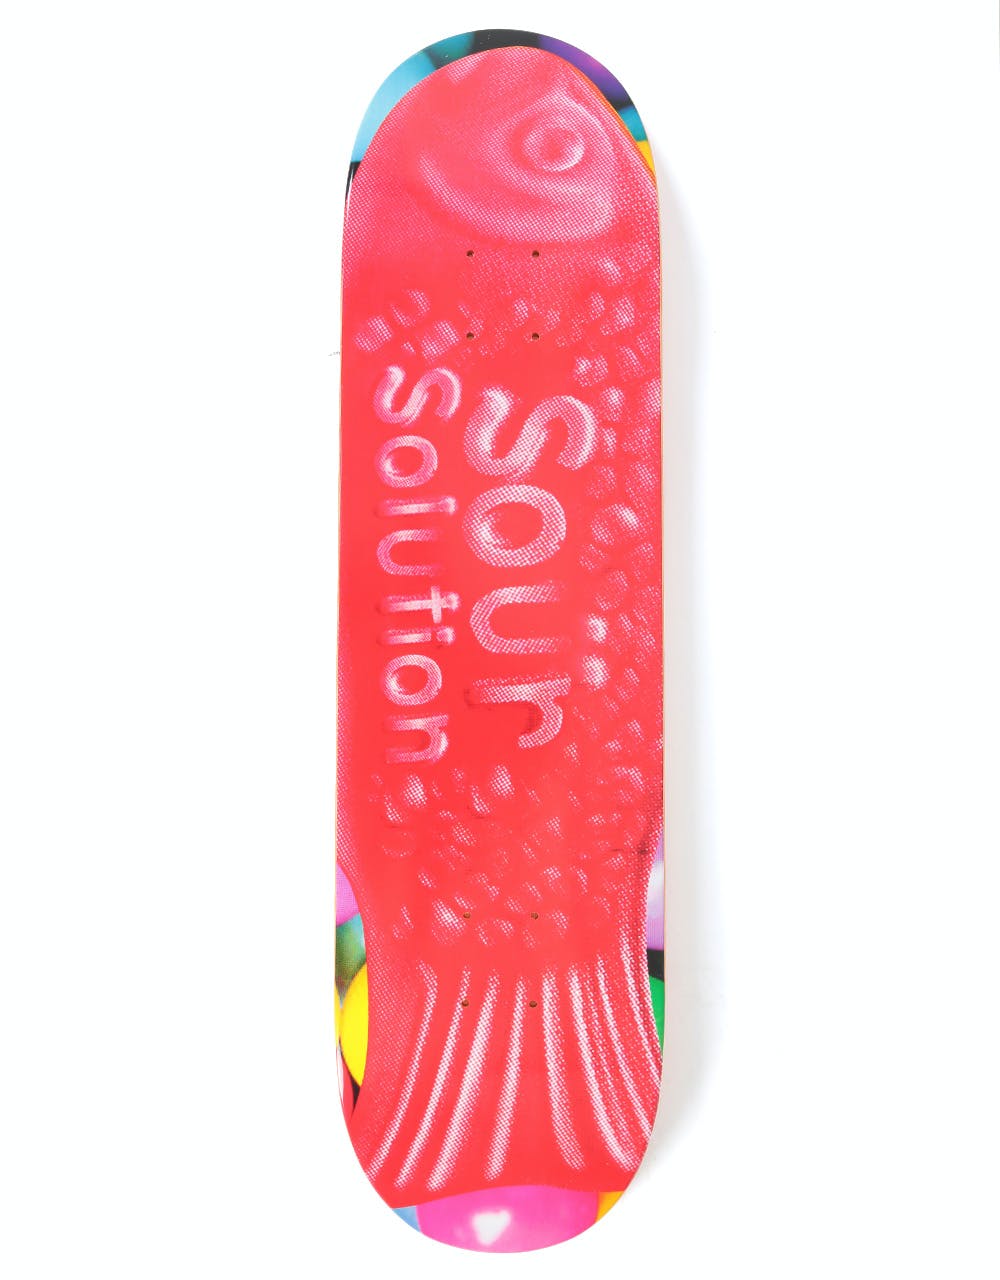 Sour 'Sour Fish' Skateboard Deck - 8.125"